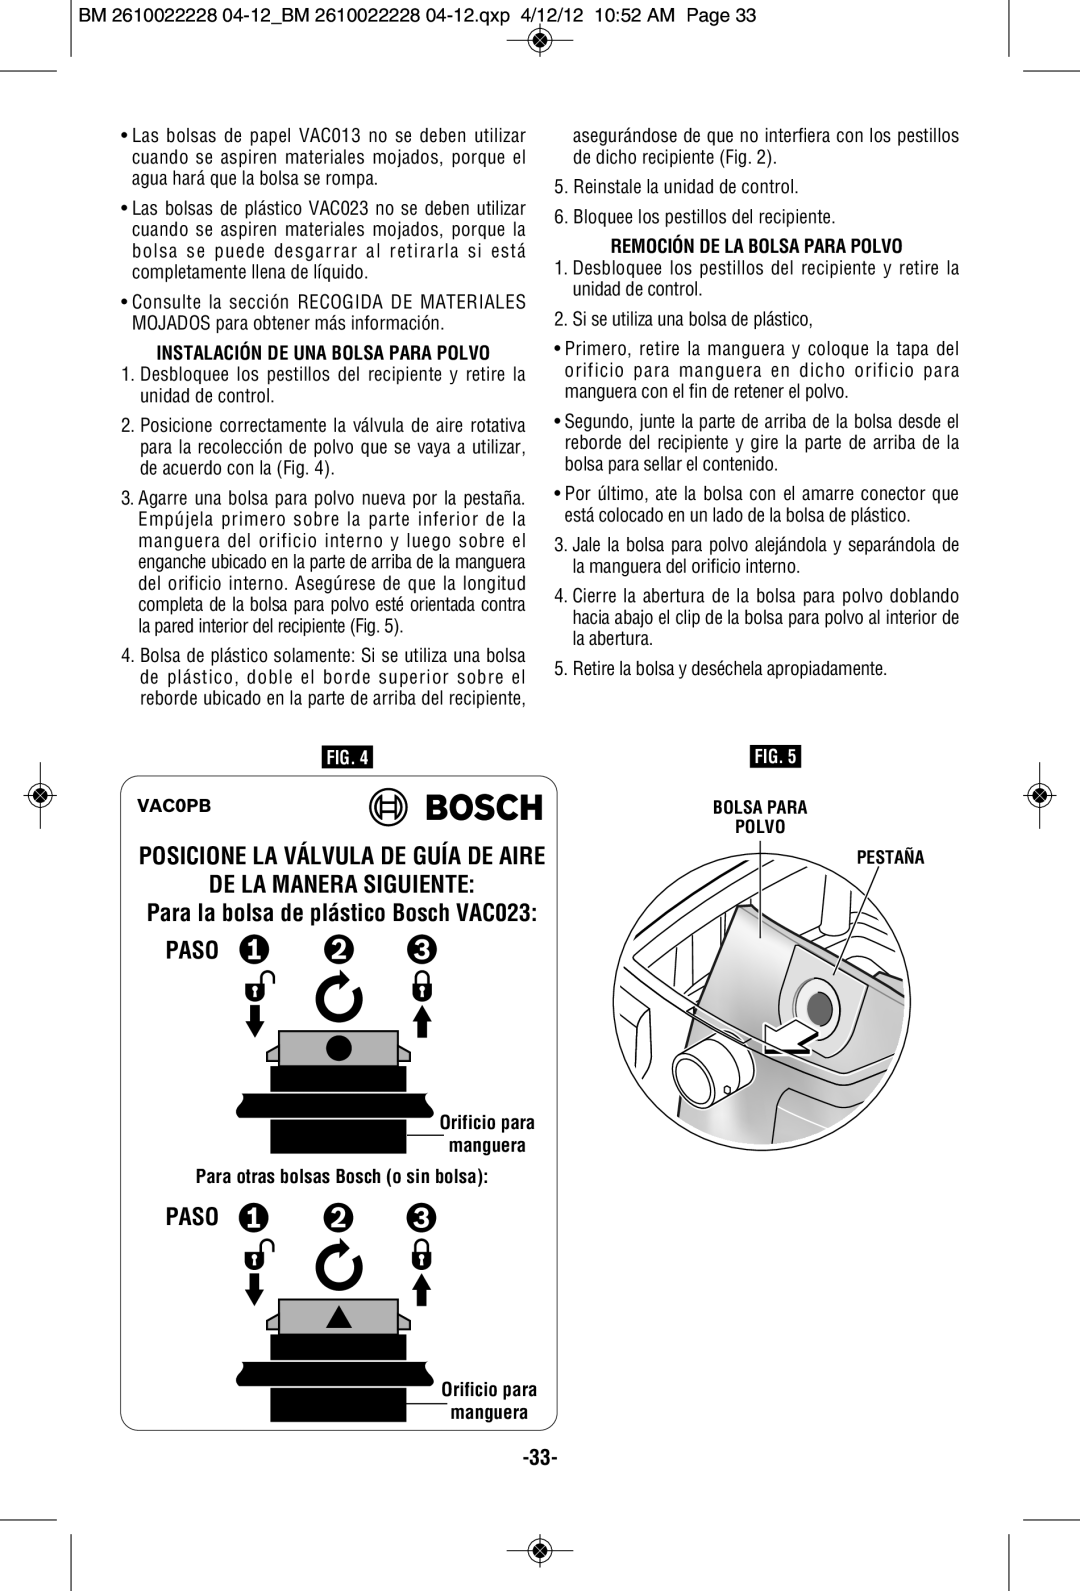 Bosch Power Tools 3931A-PB manual Posicione La Válvula De Guía De Aire De La Manera Siguiente, Paso, Orificio para manguera 